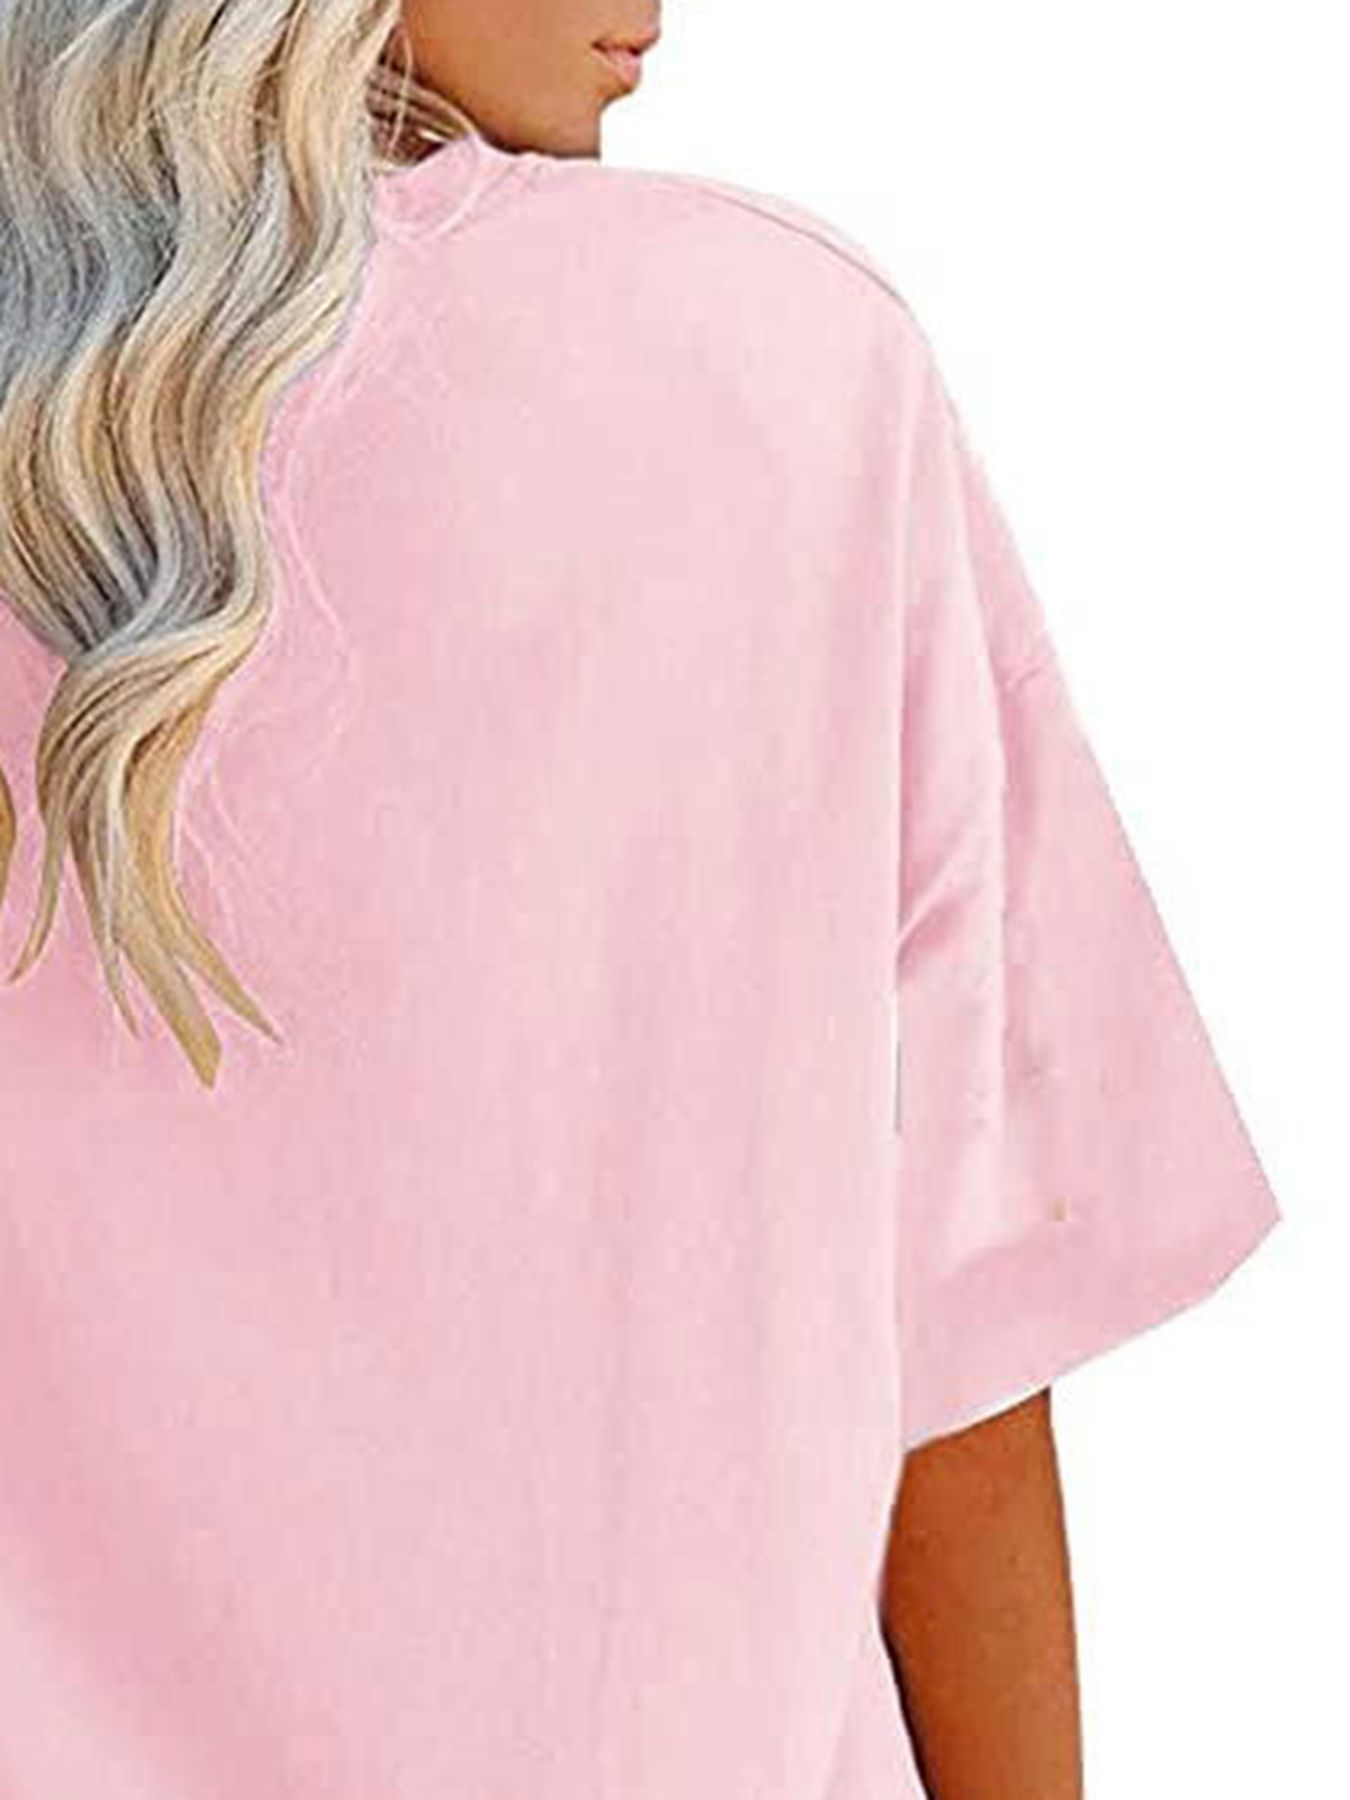 Cathalem Womens Oversized T Shirts Crewneck Short Sleeve Casual